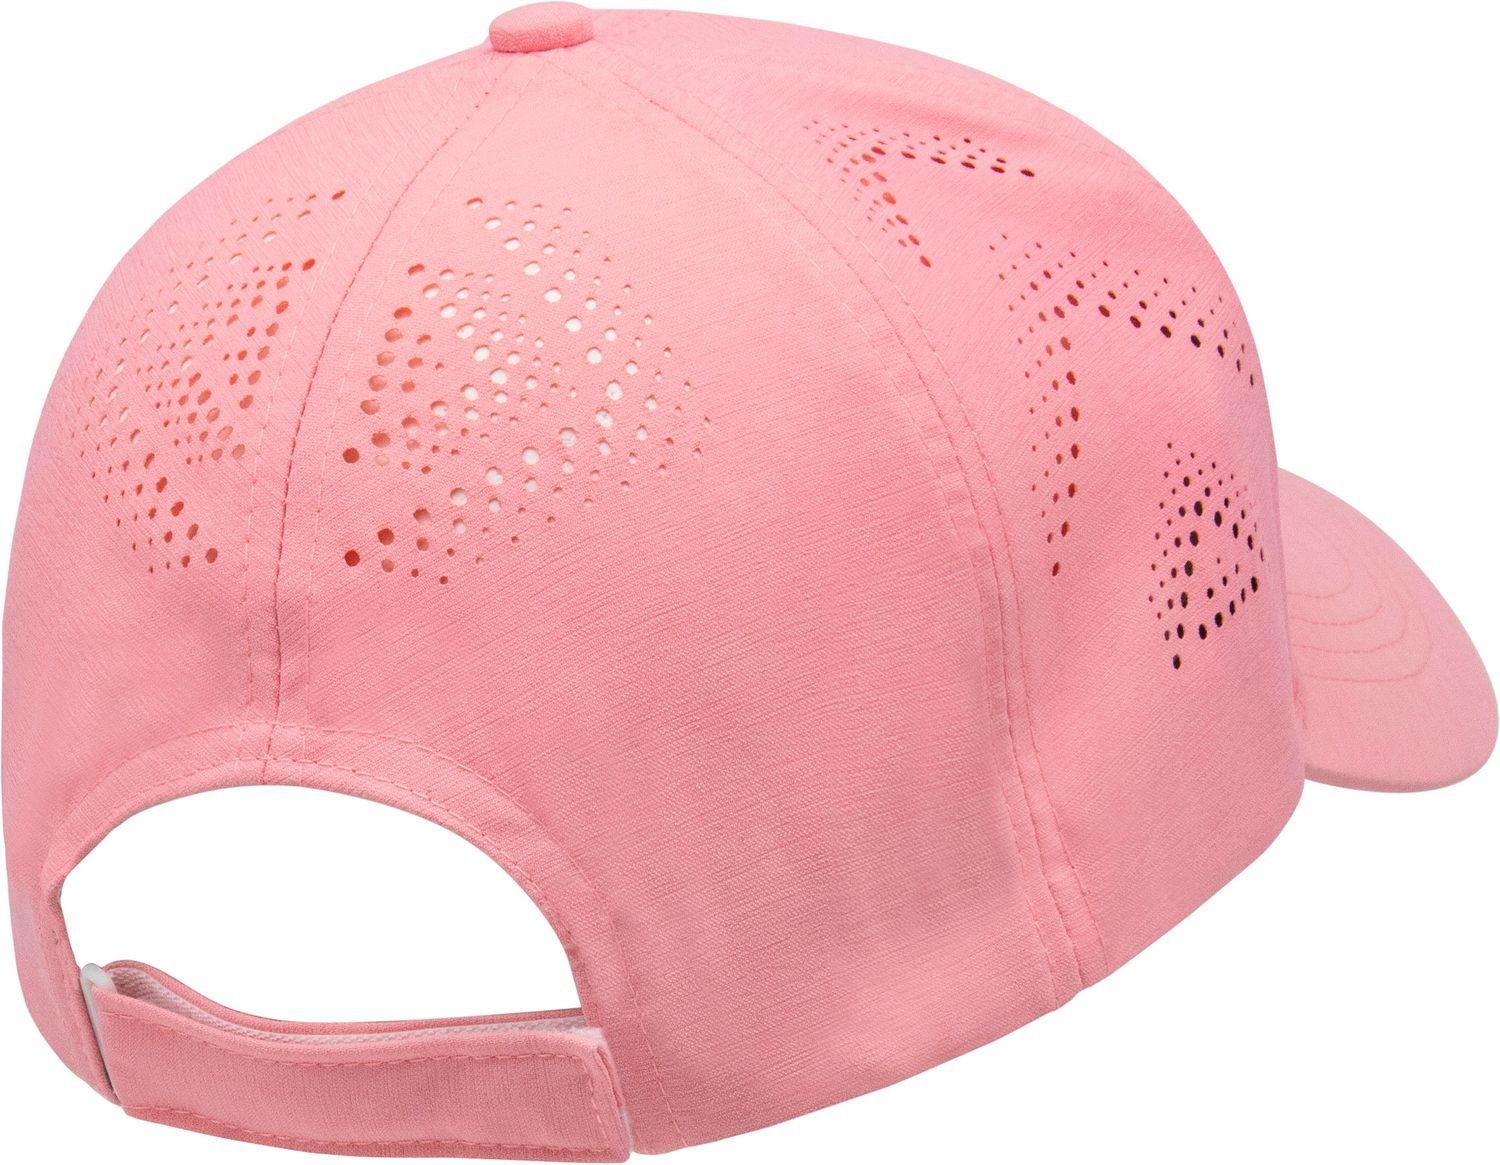 chillouts Baseball Cap UV-Schutz Philadelphia 93-pink Stanzung und 50+ mit